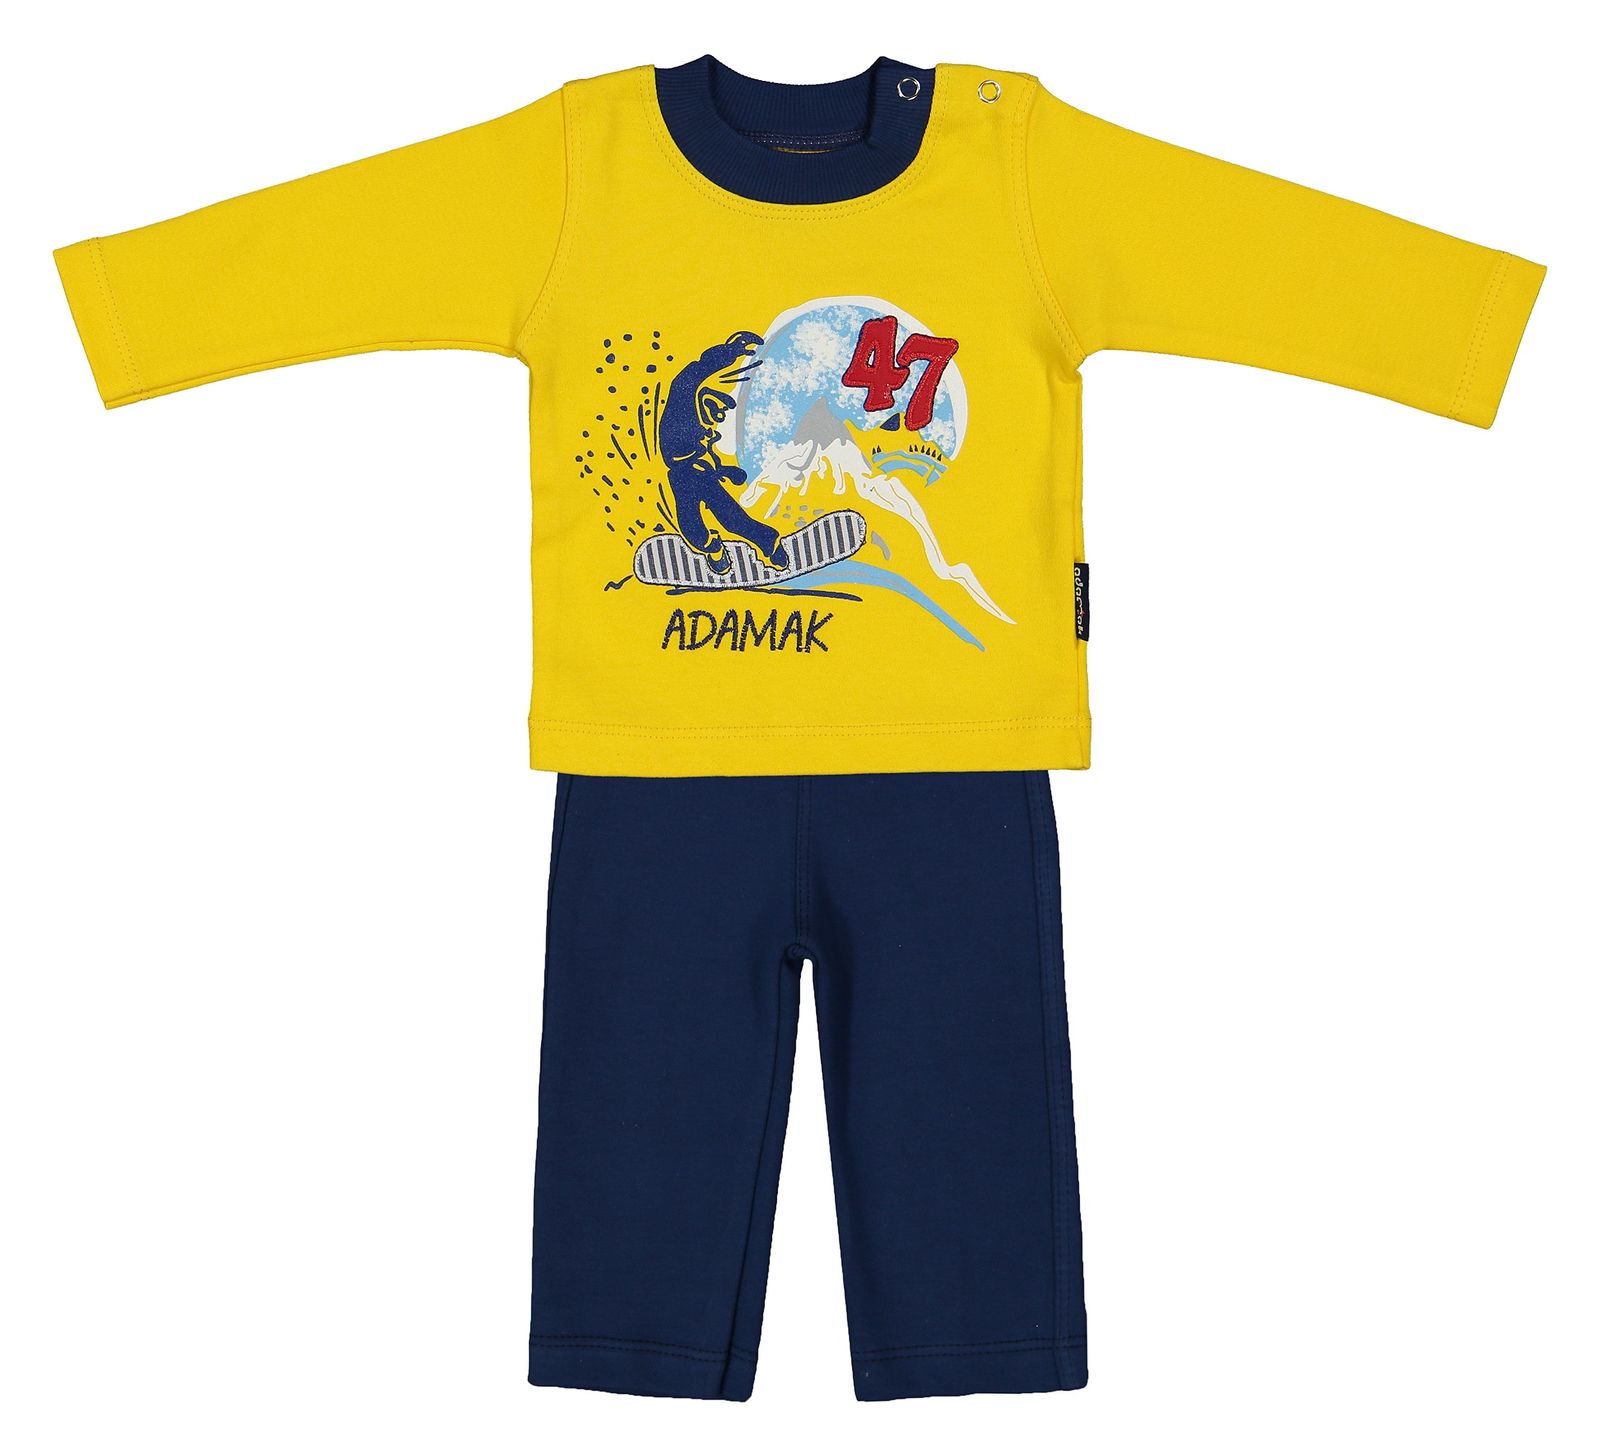 ست تی شرت و شلوار نوزادی پسرانه آدمک مدل 2171100-16 - زرد - 1